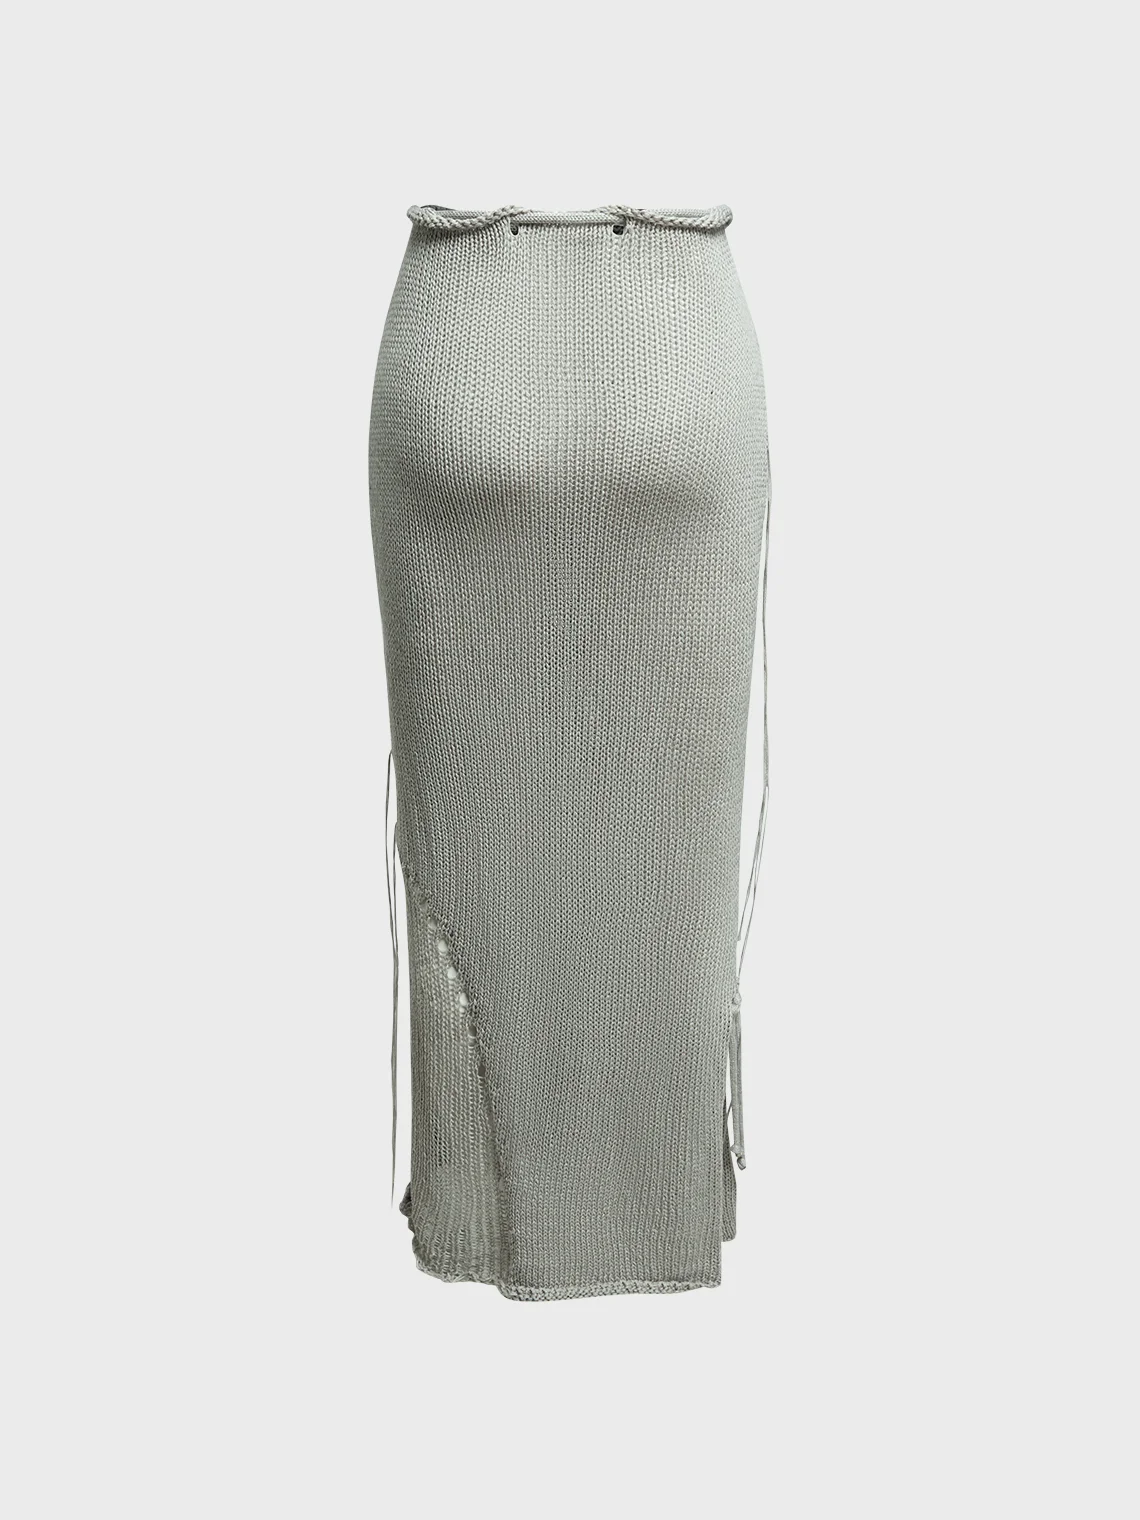 Punk Gray Bottom Skirt